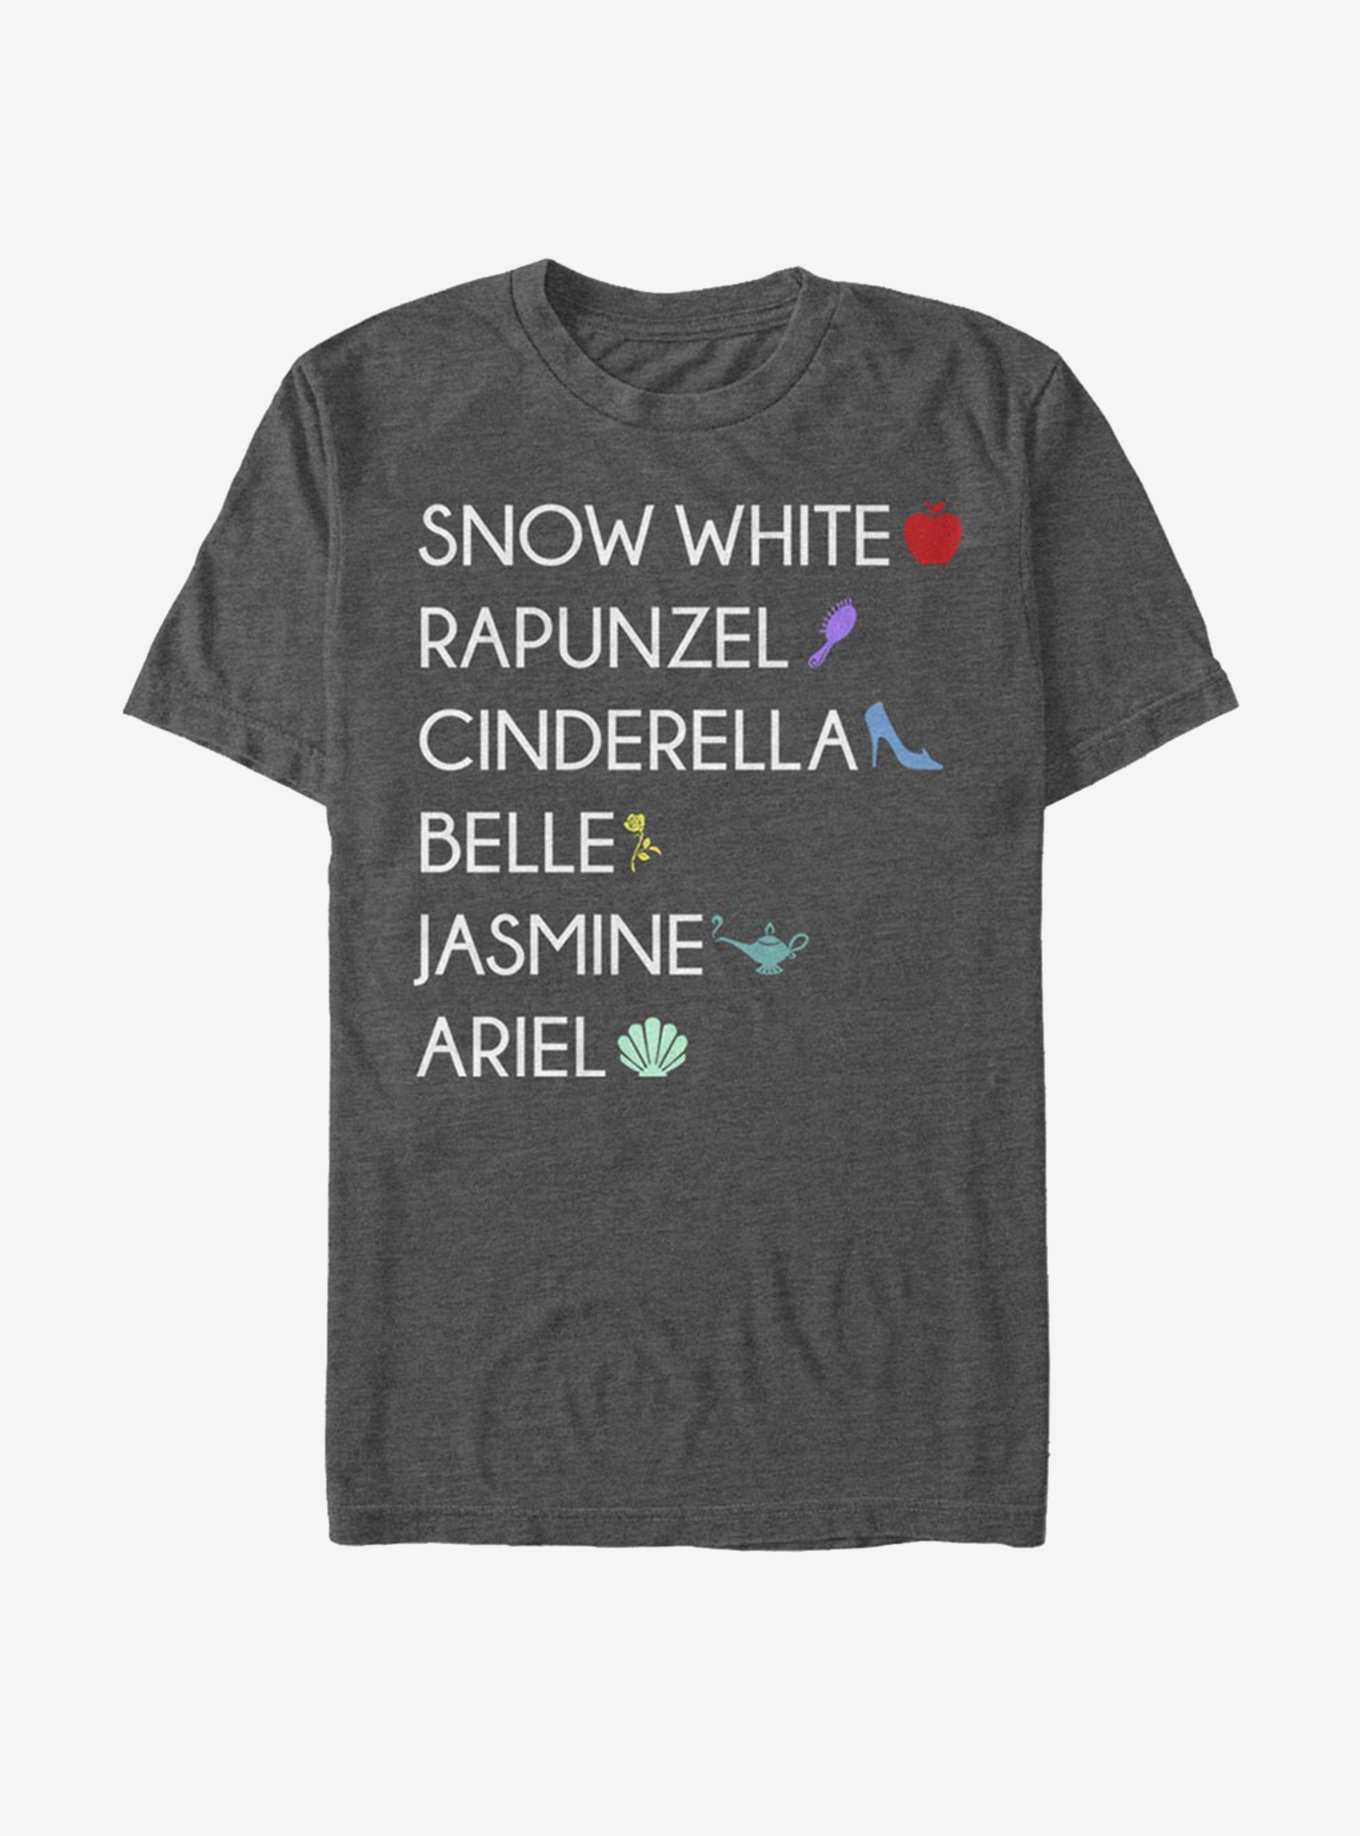 Disney Princess Classic Princess List T-Shirt, , hi-res